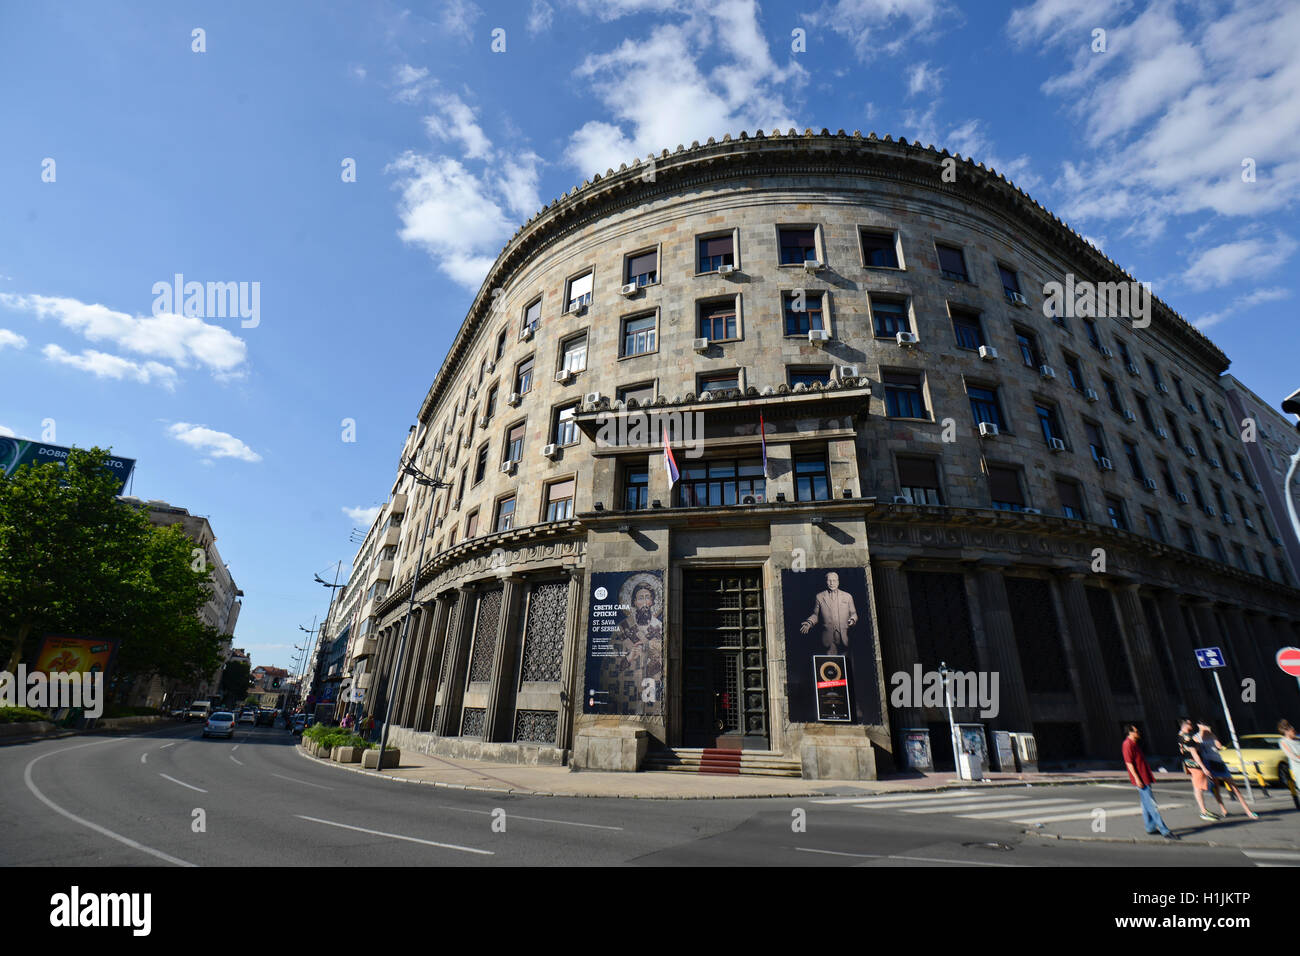 Historisches Museum von Serbien - Belgrad Stockfoto